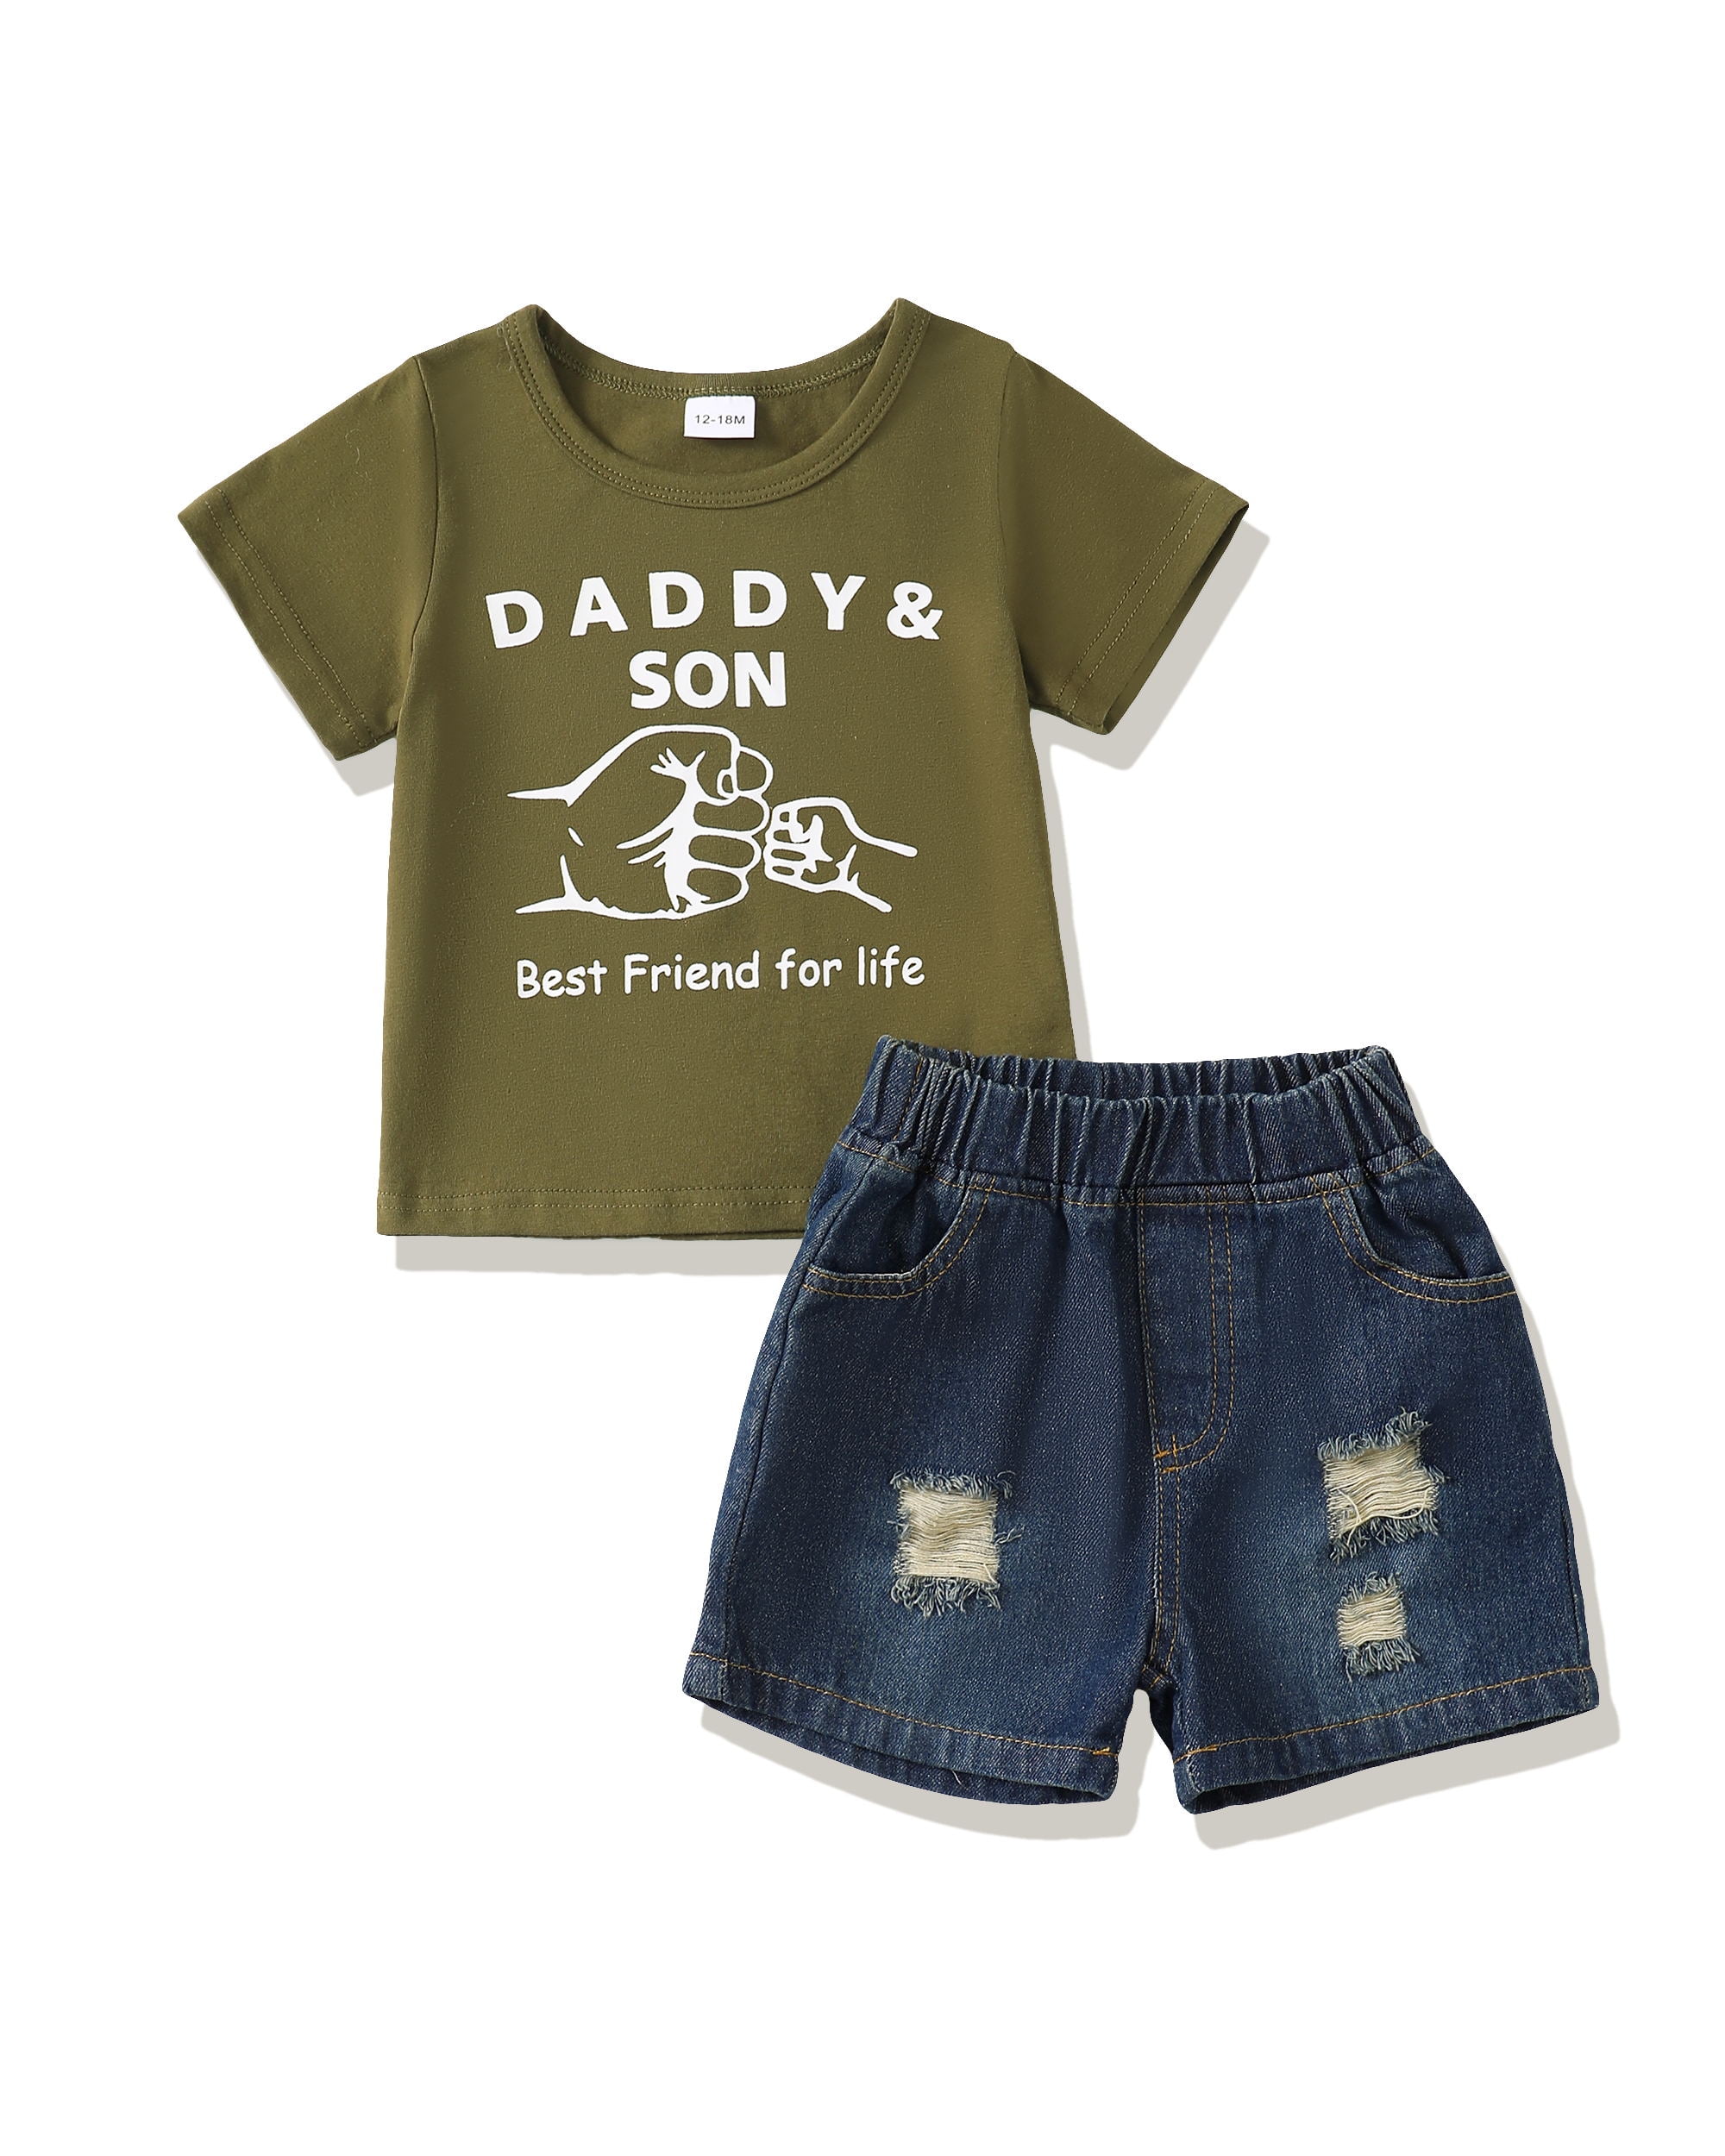 18 Months Boy Clothes Summer Toddler Boy Outfits 2T Green T-Shirt Denim ...